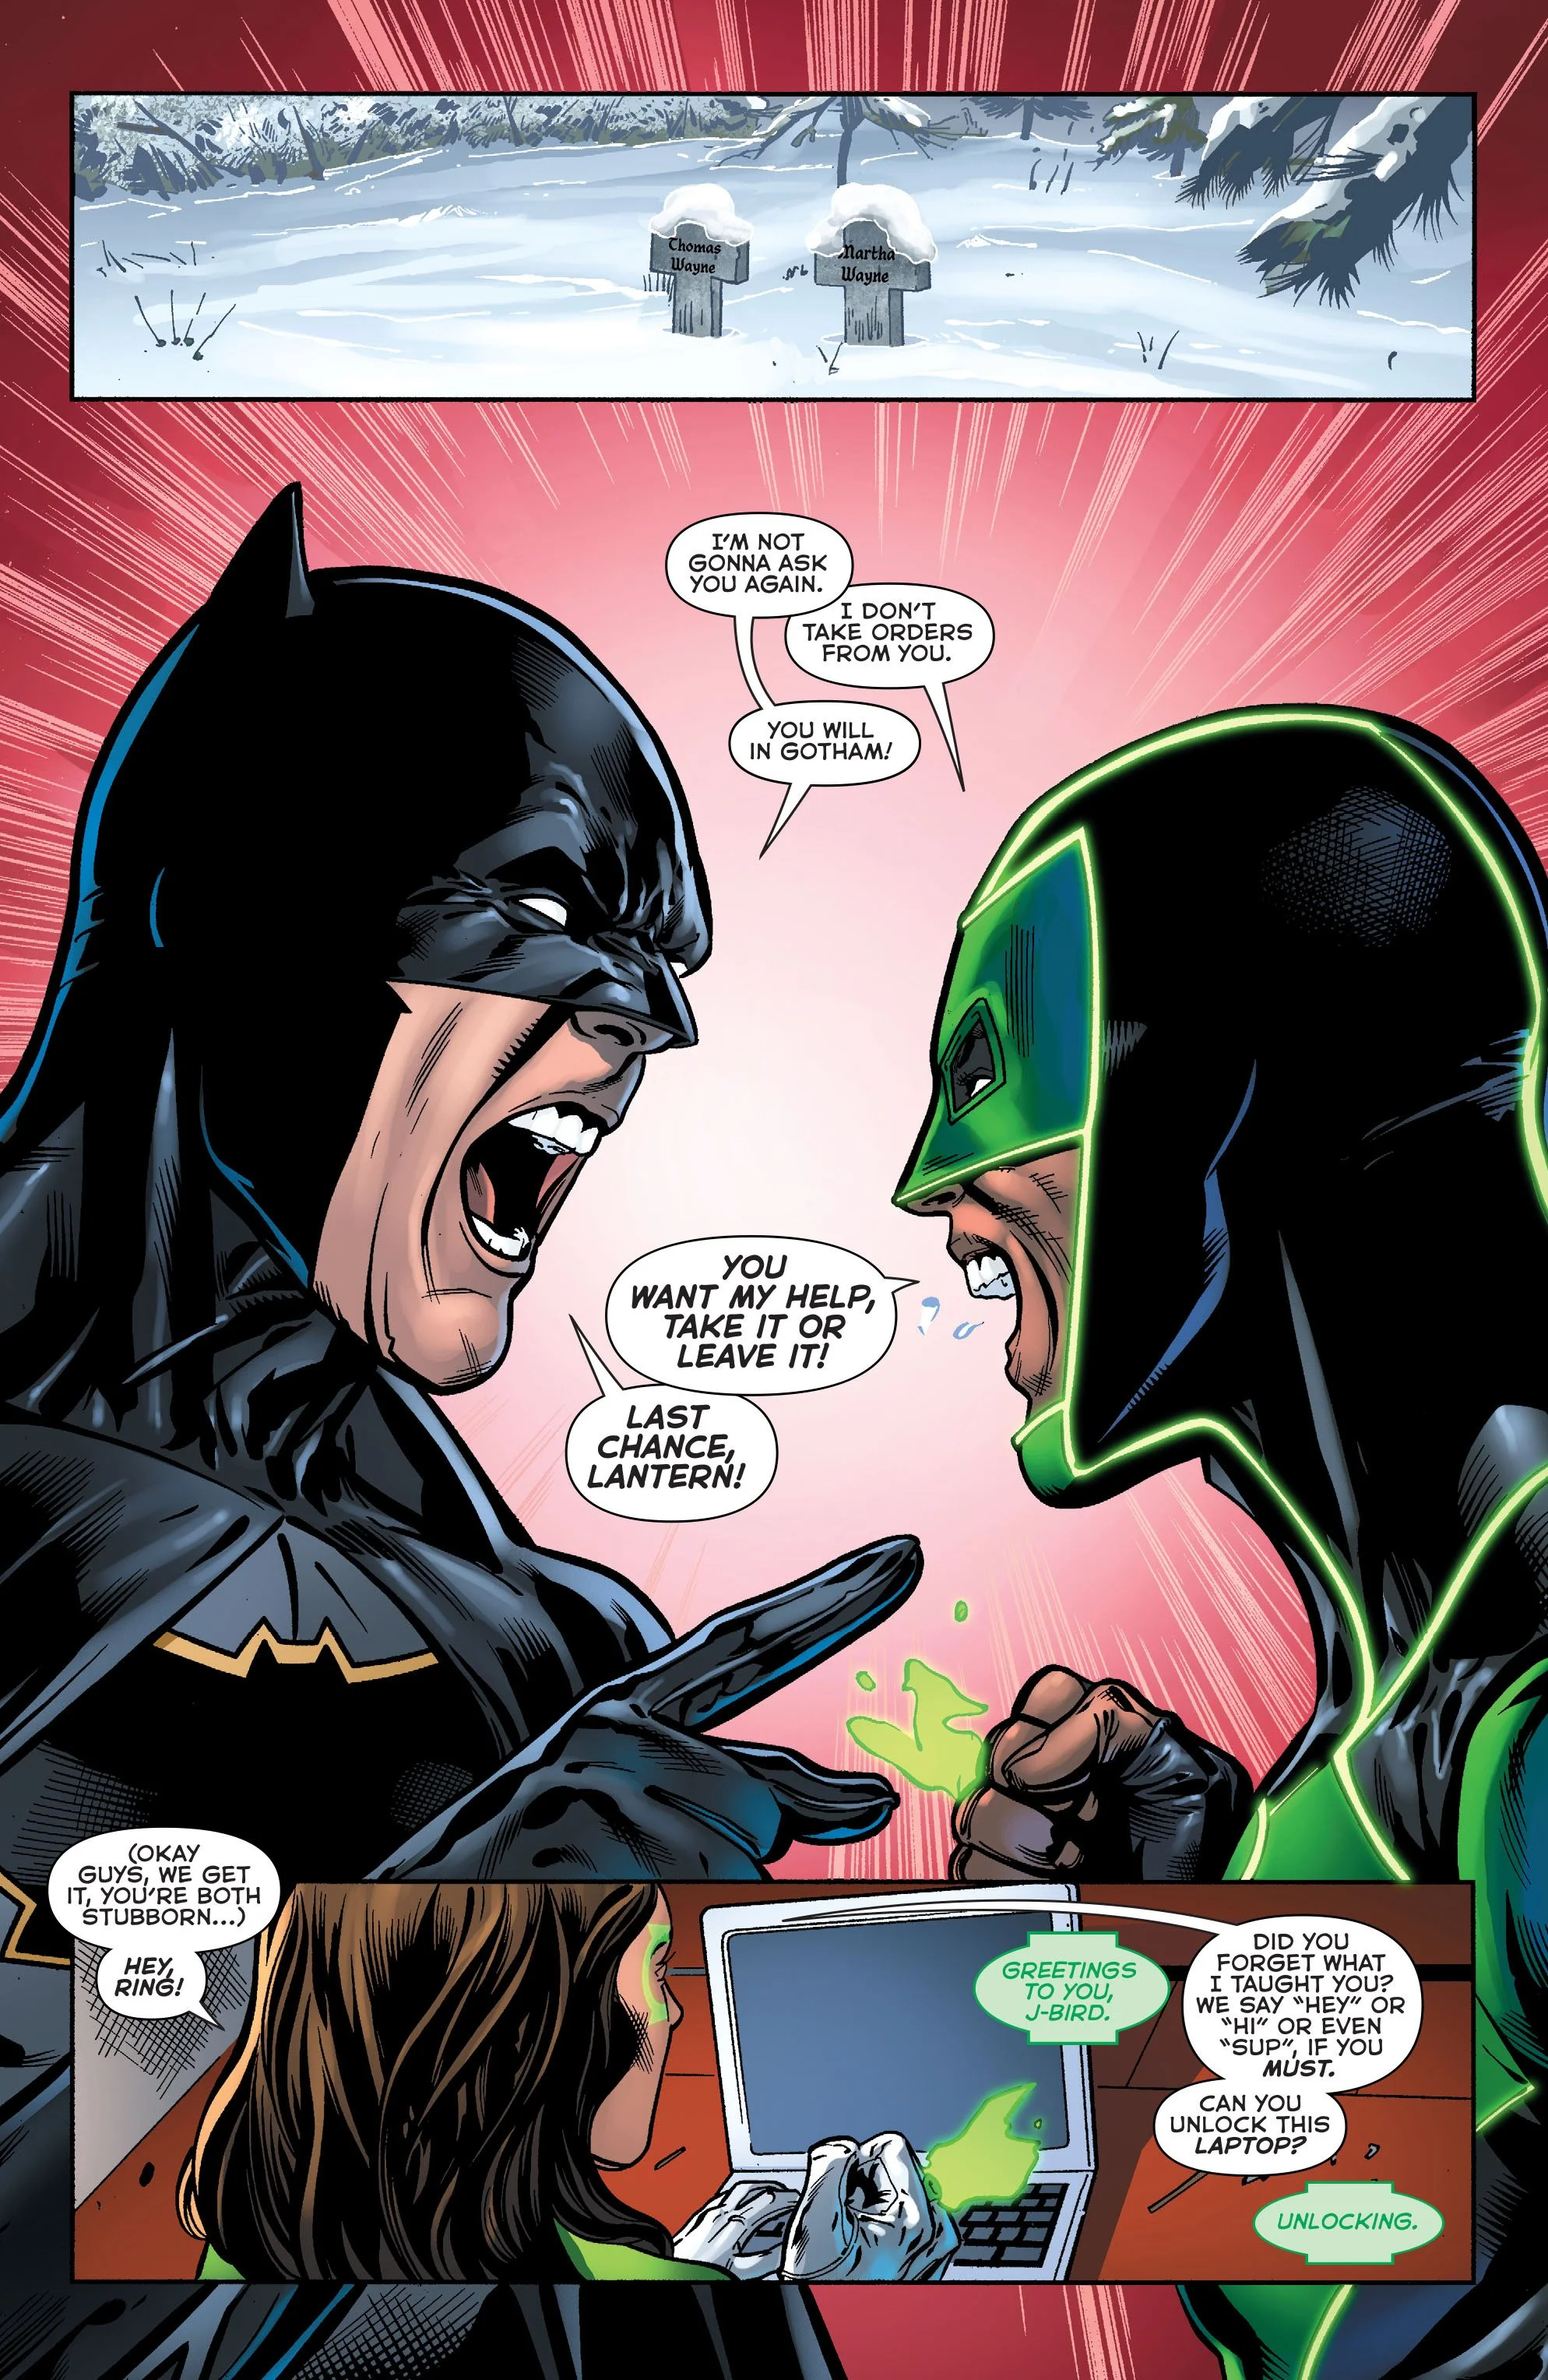 Бэтмен попросил помощи у Зеленых Фонарей - фото 3